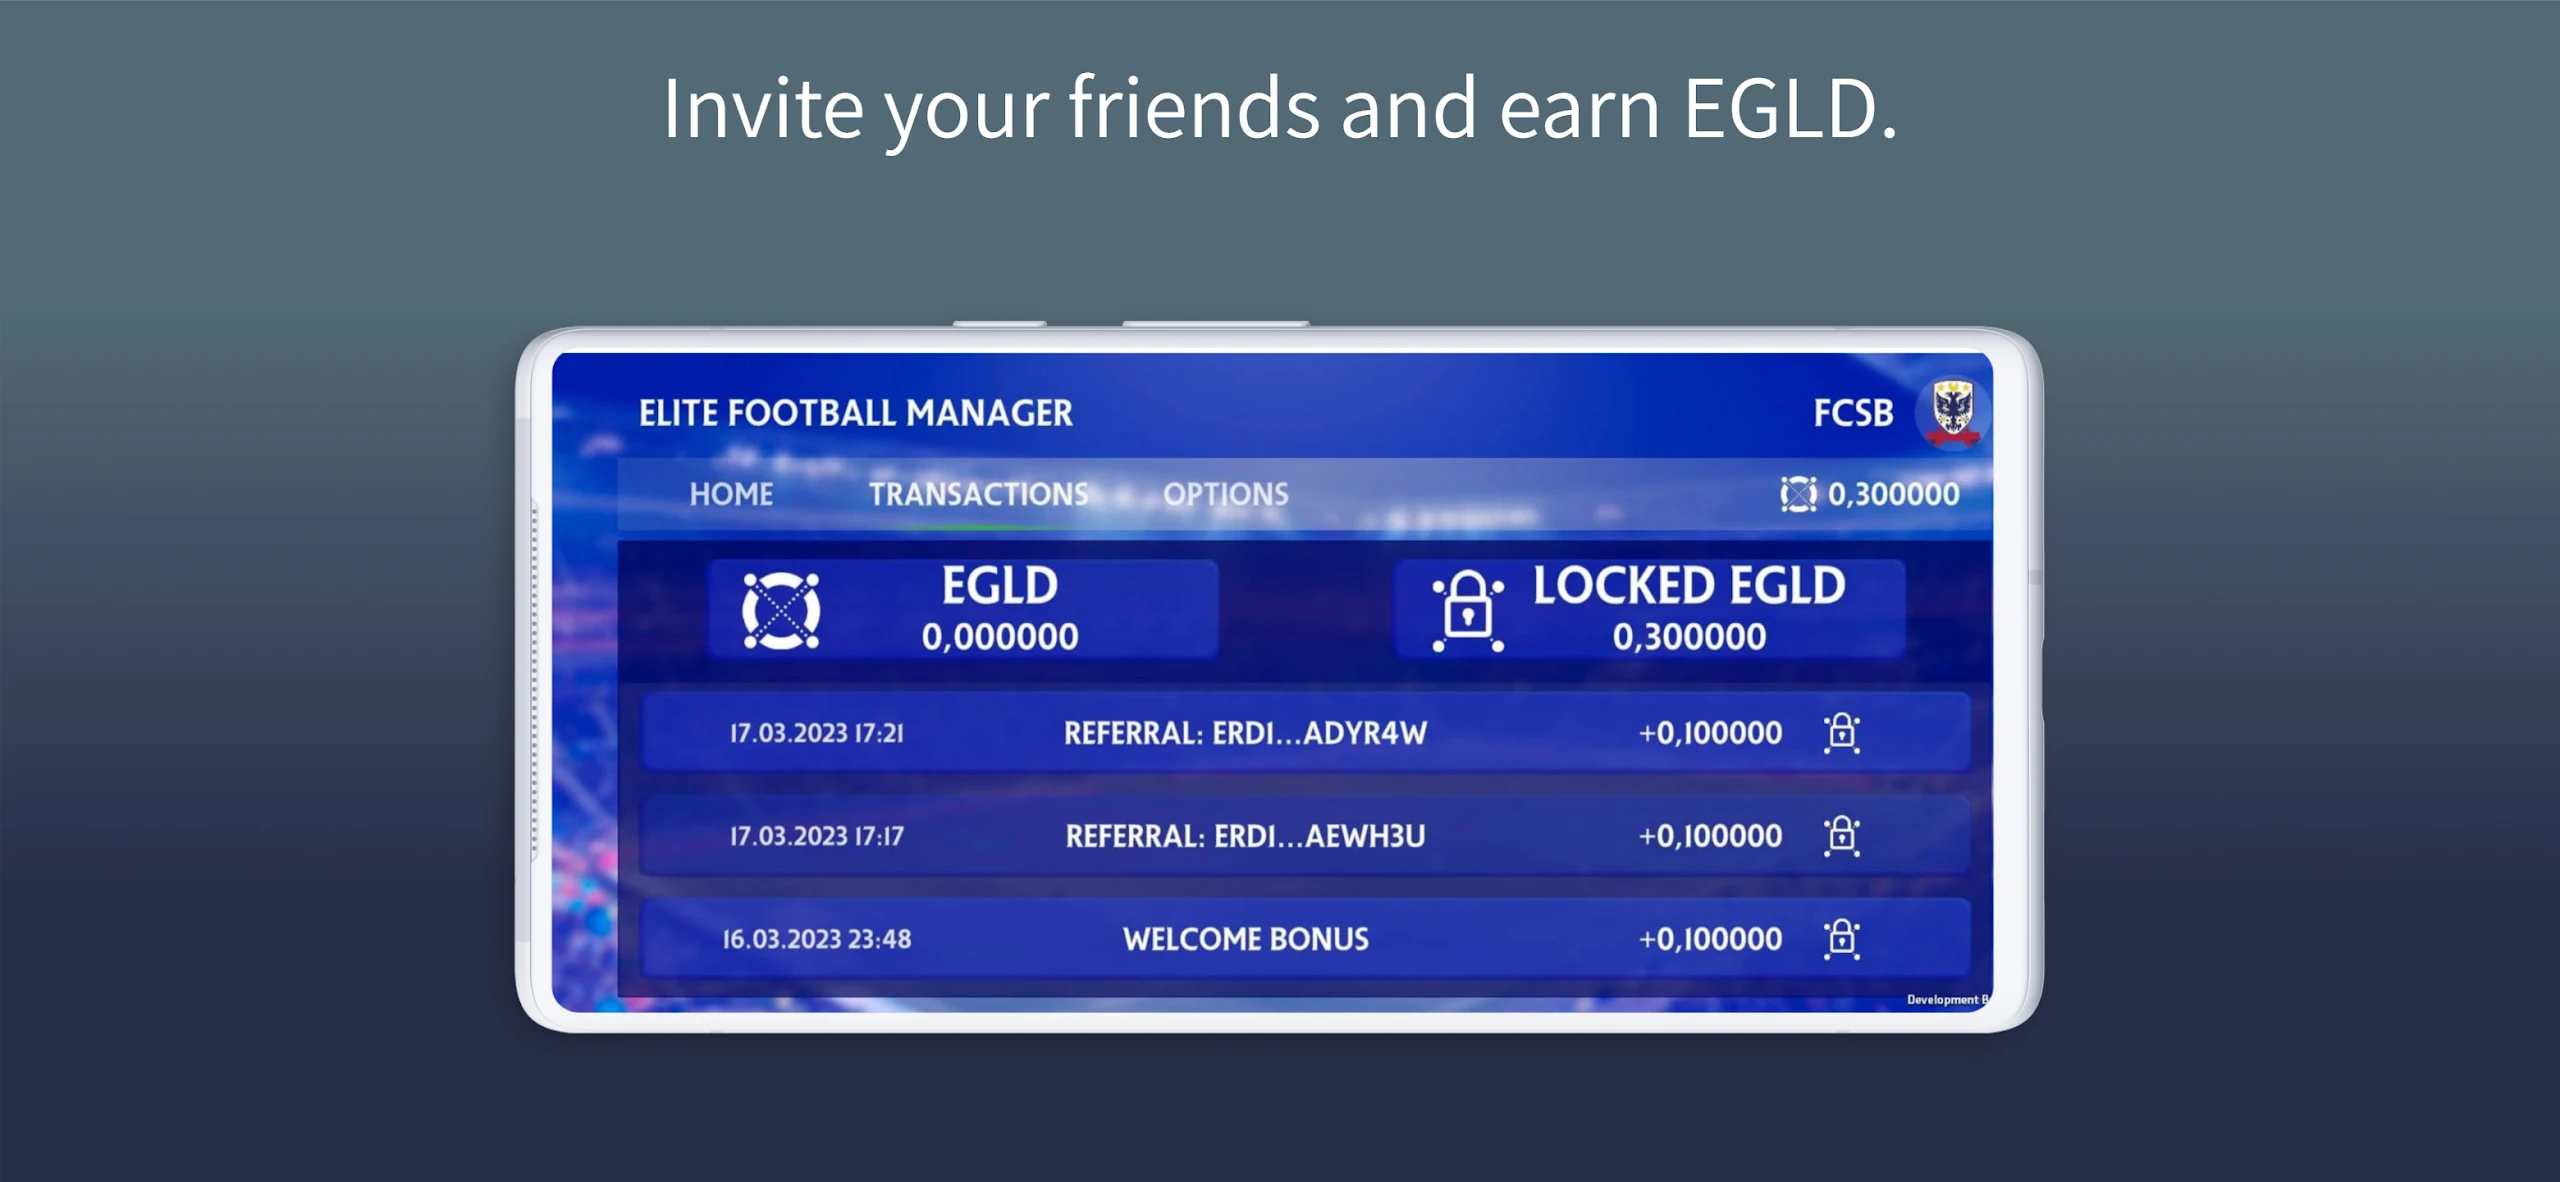 EFM - Elite Football Manager